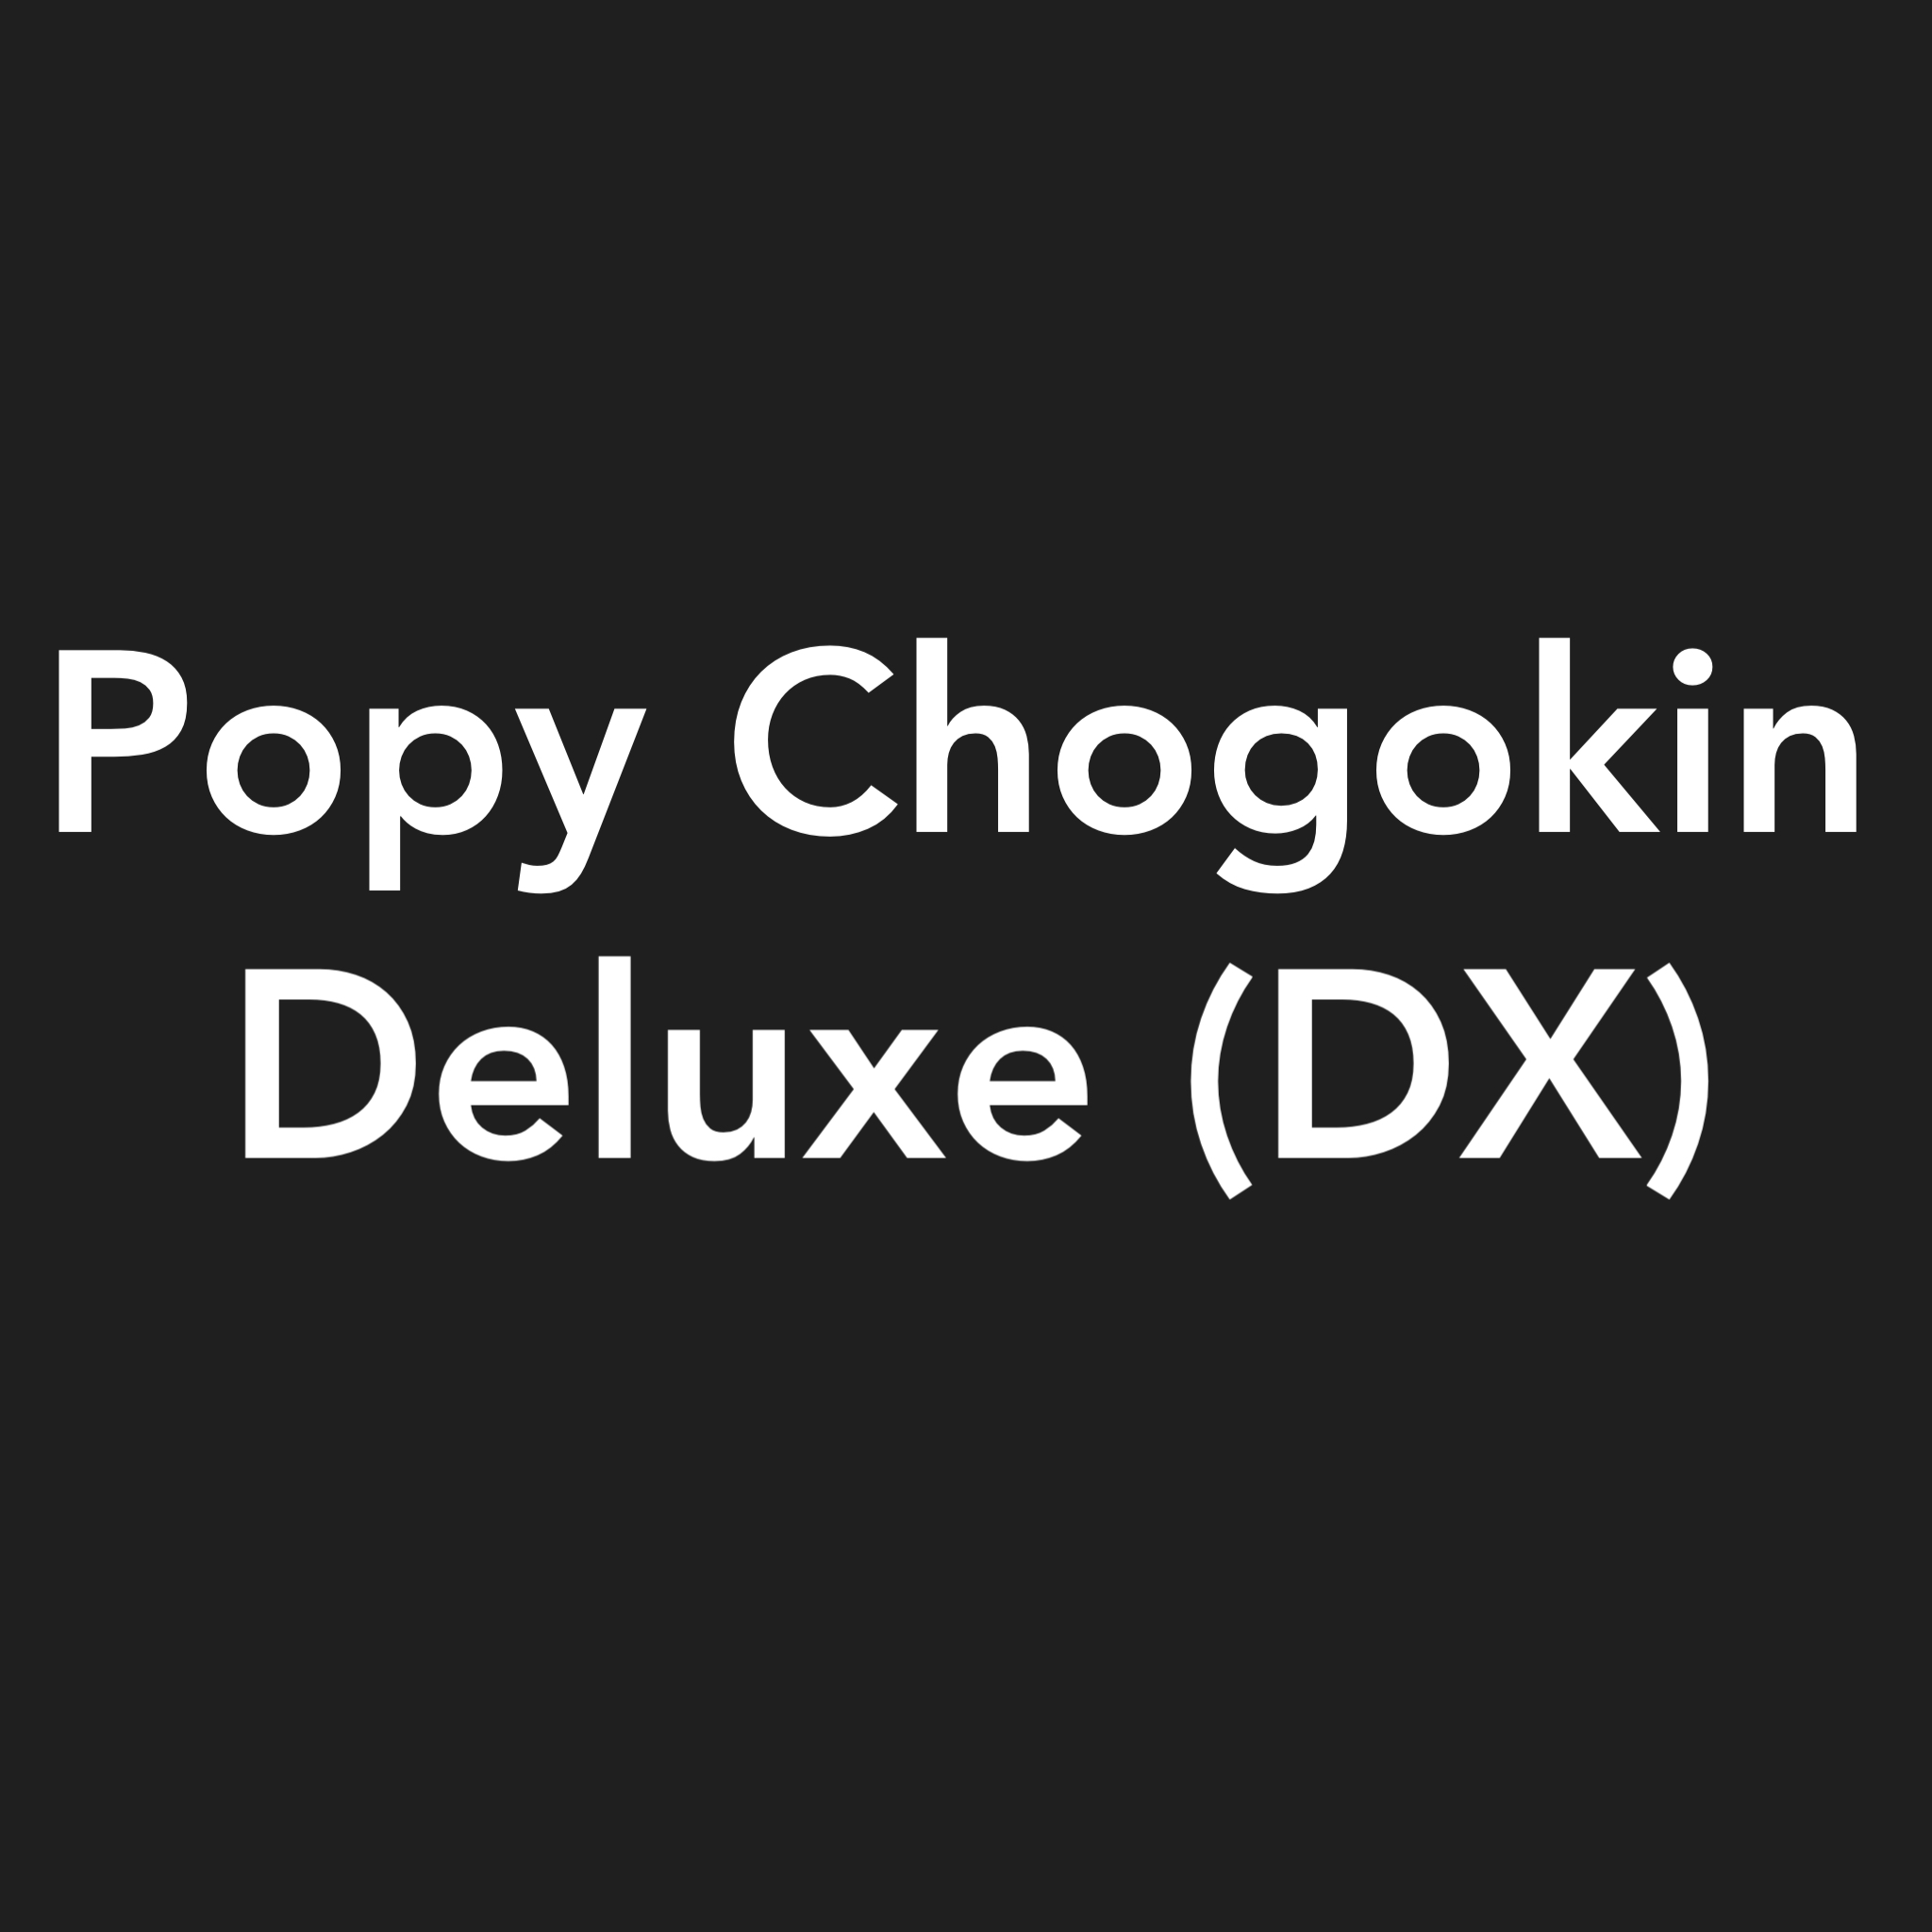 POPY CHOGOKIN DX